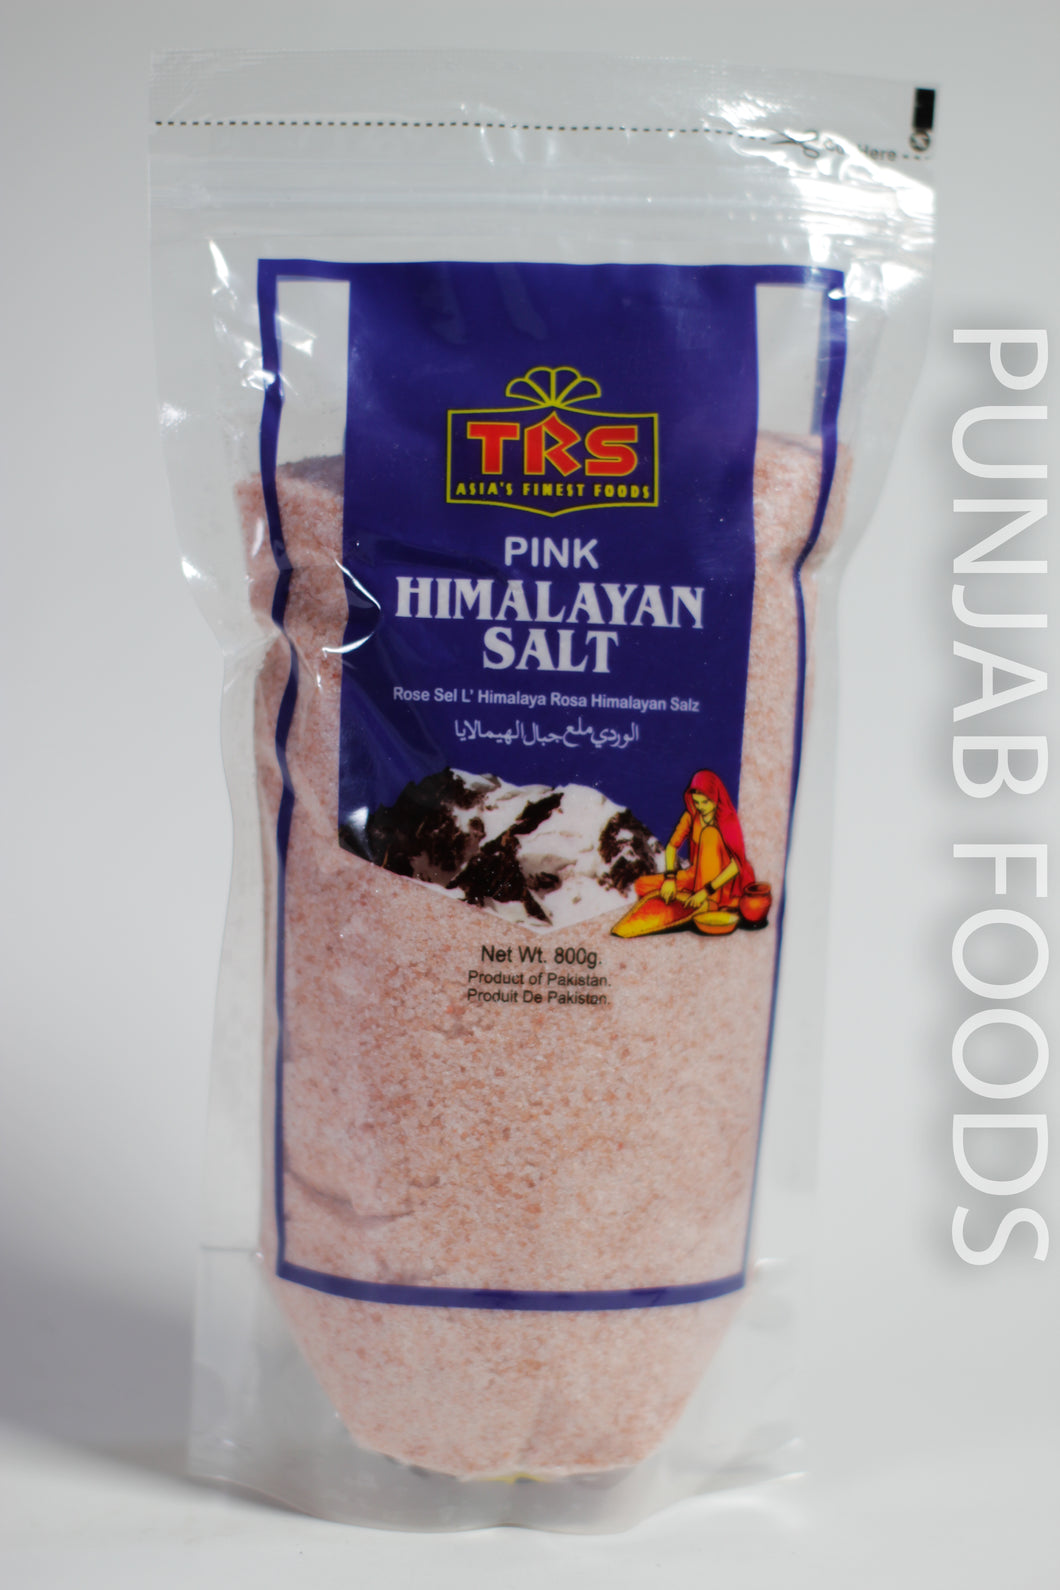 TRS Pink Himalayan Salt